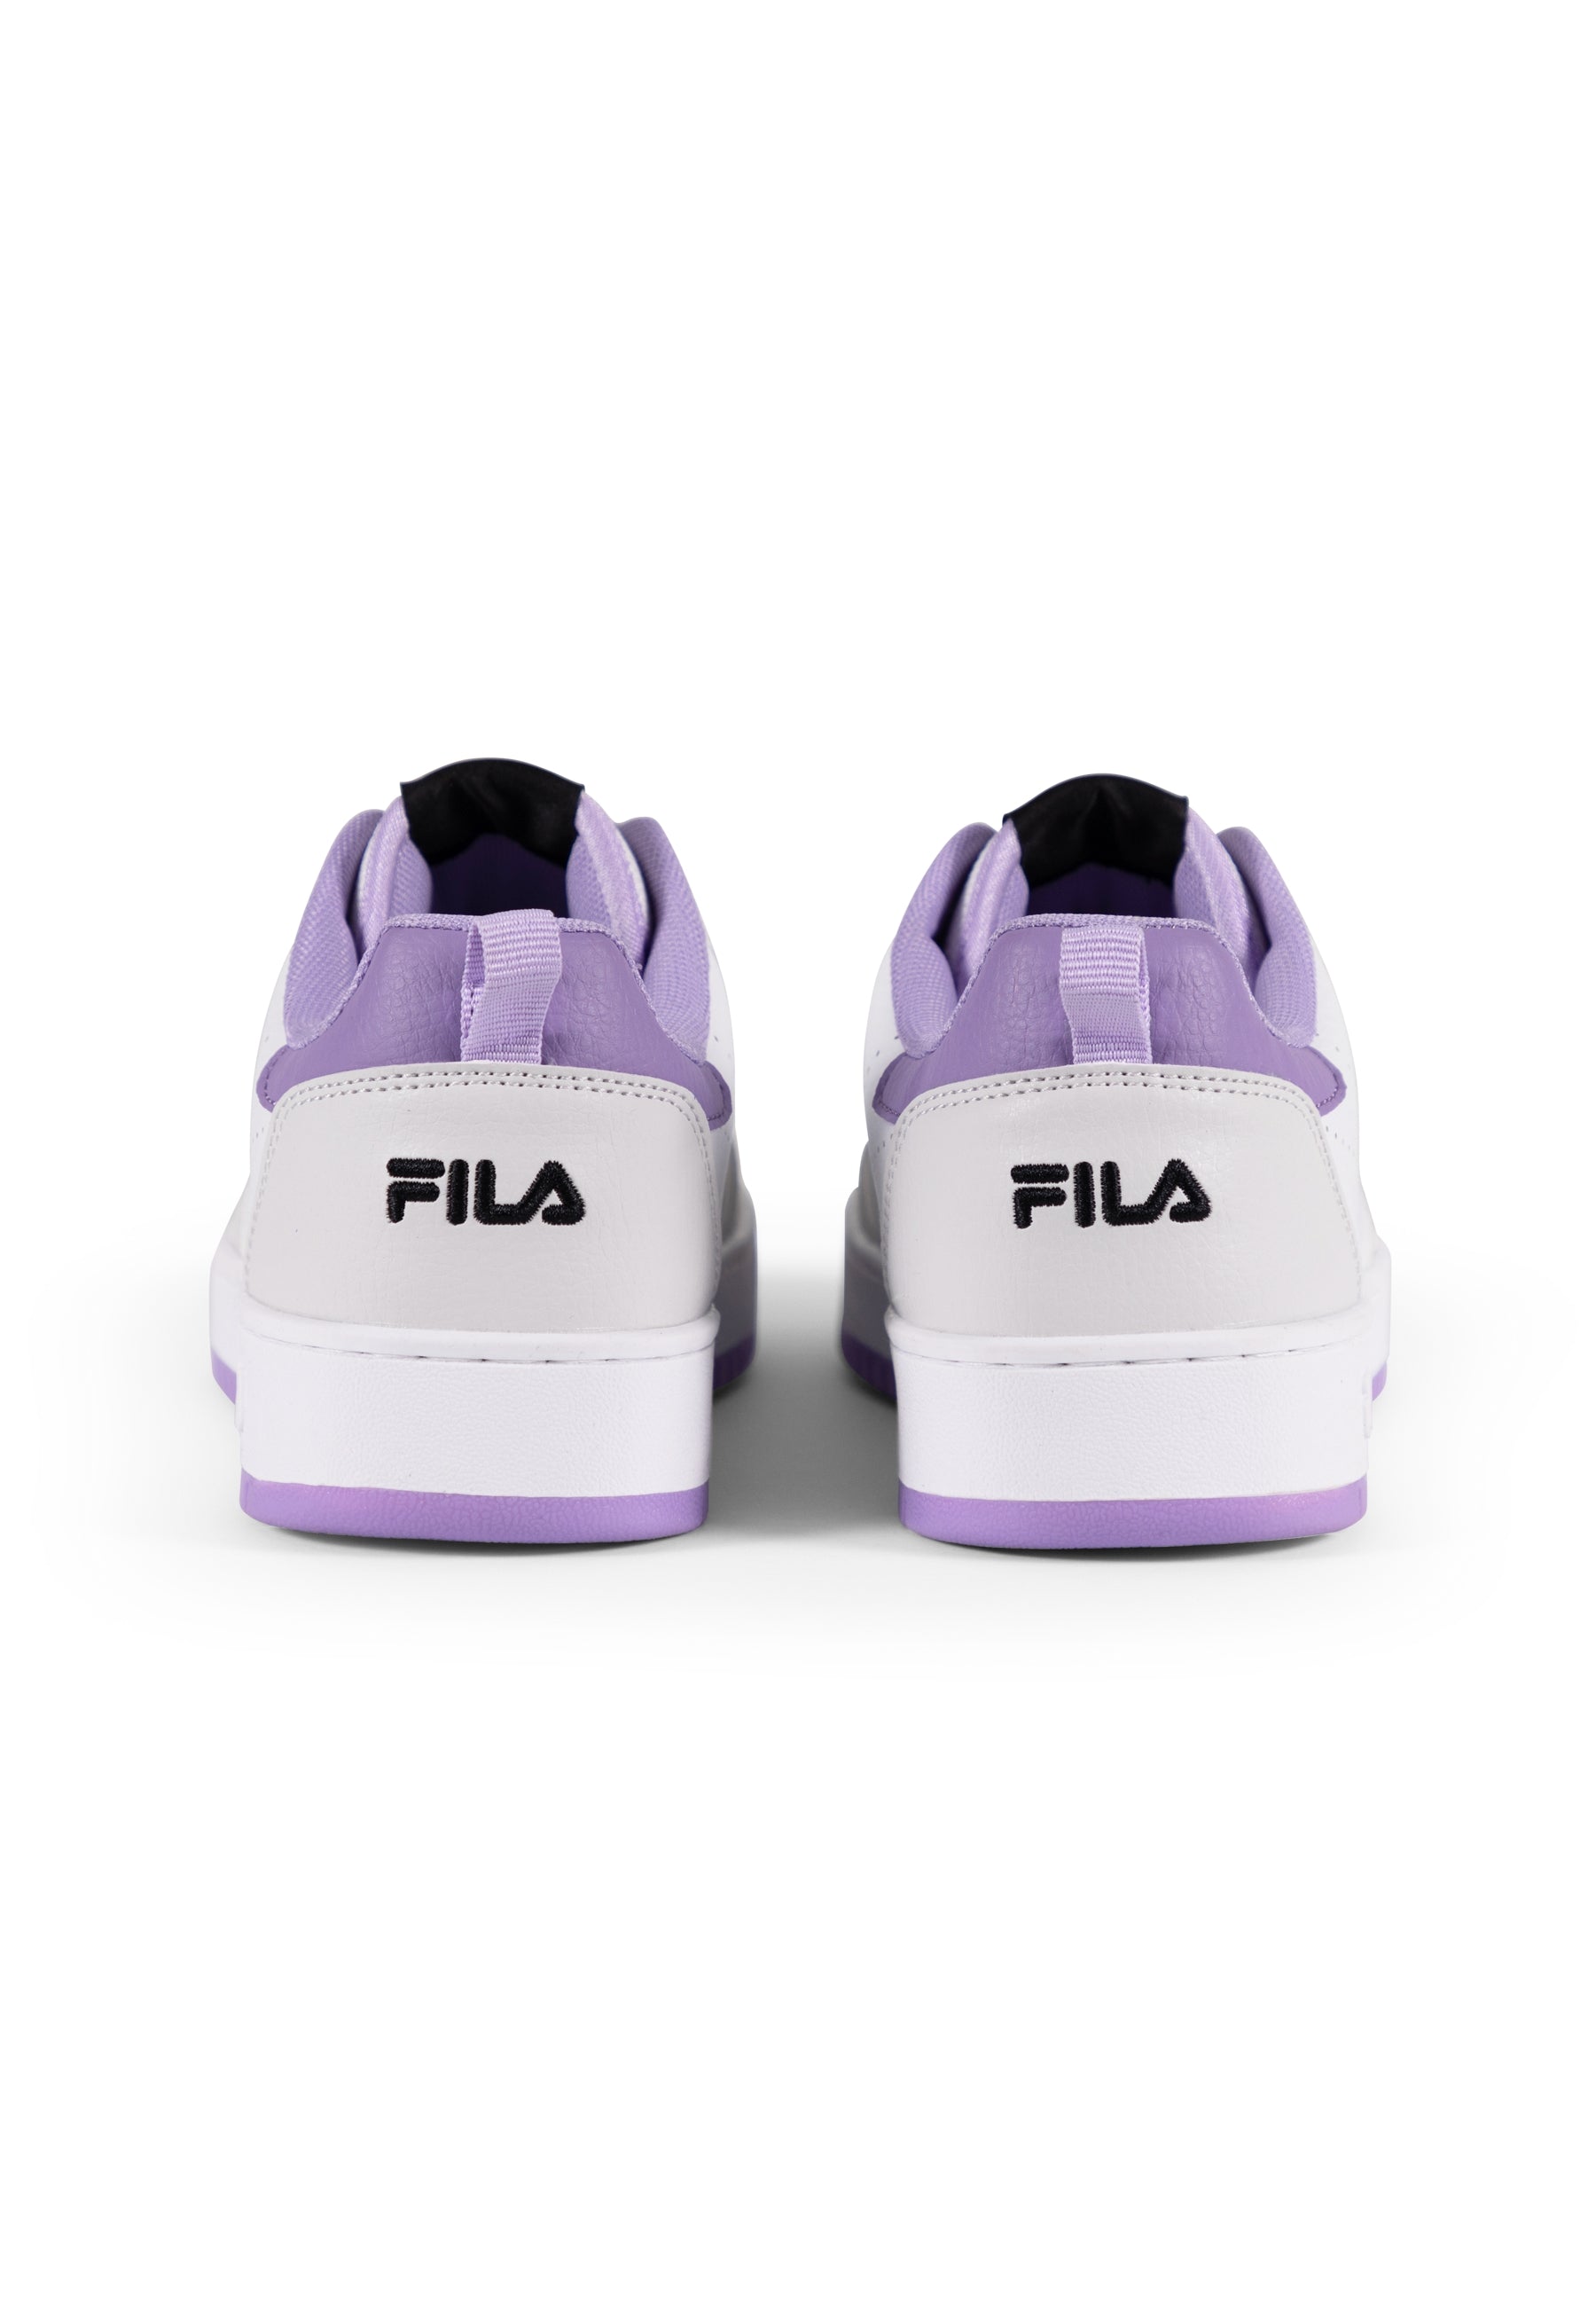 Rega Wmn in White-Viola Sneakers Fila   